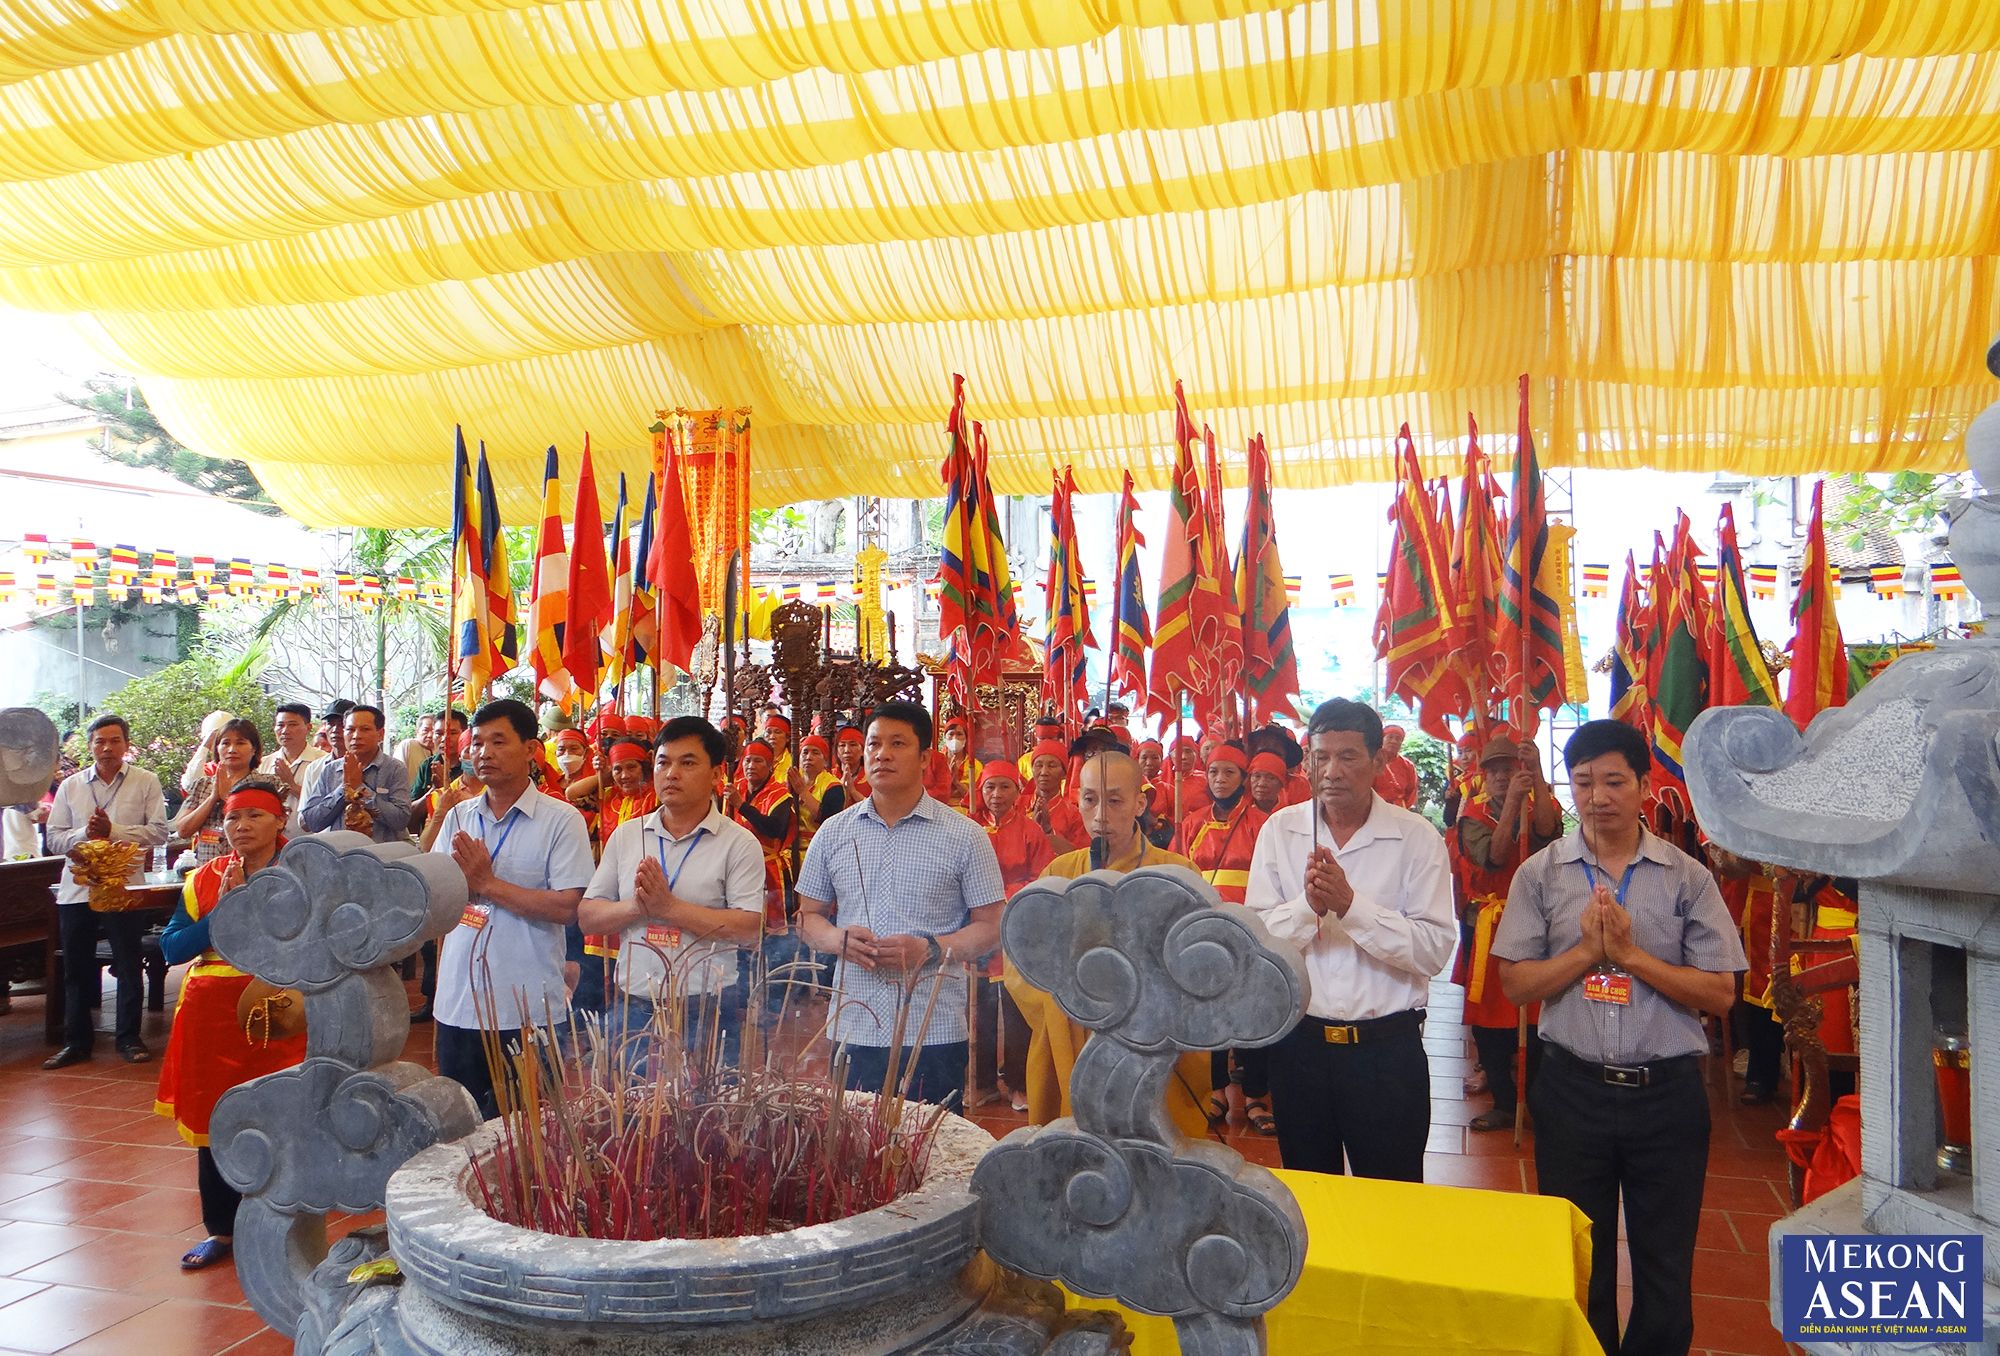 Đặc sắc lễ rước nước chùa Trông xã Hưng Long ở Hải Dương